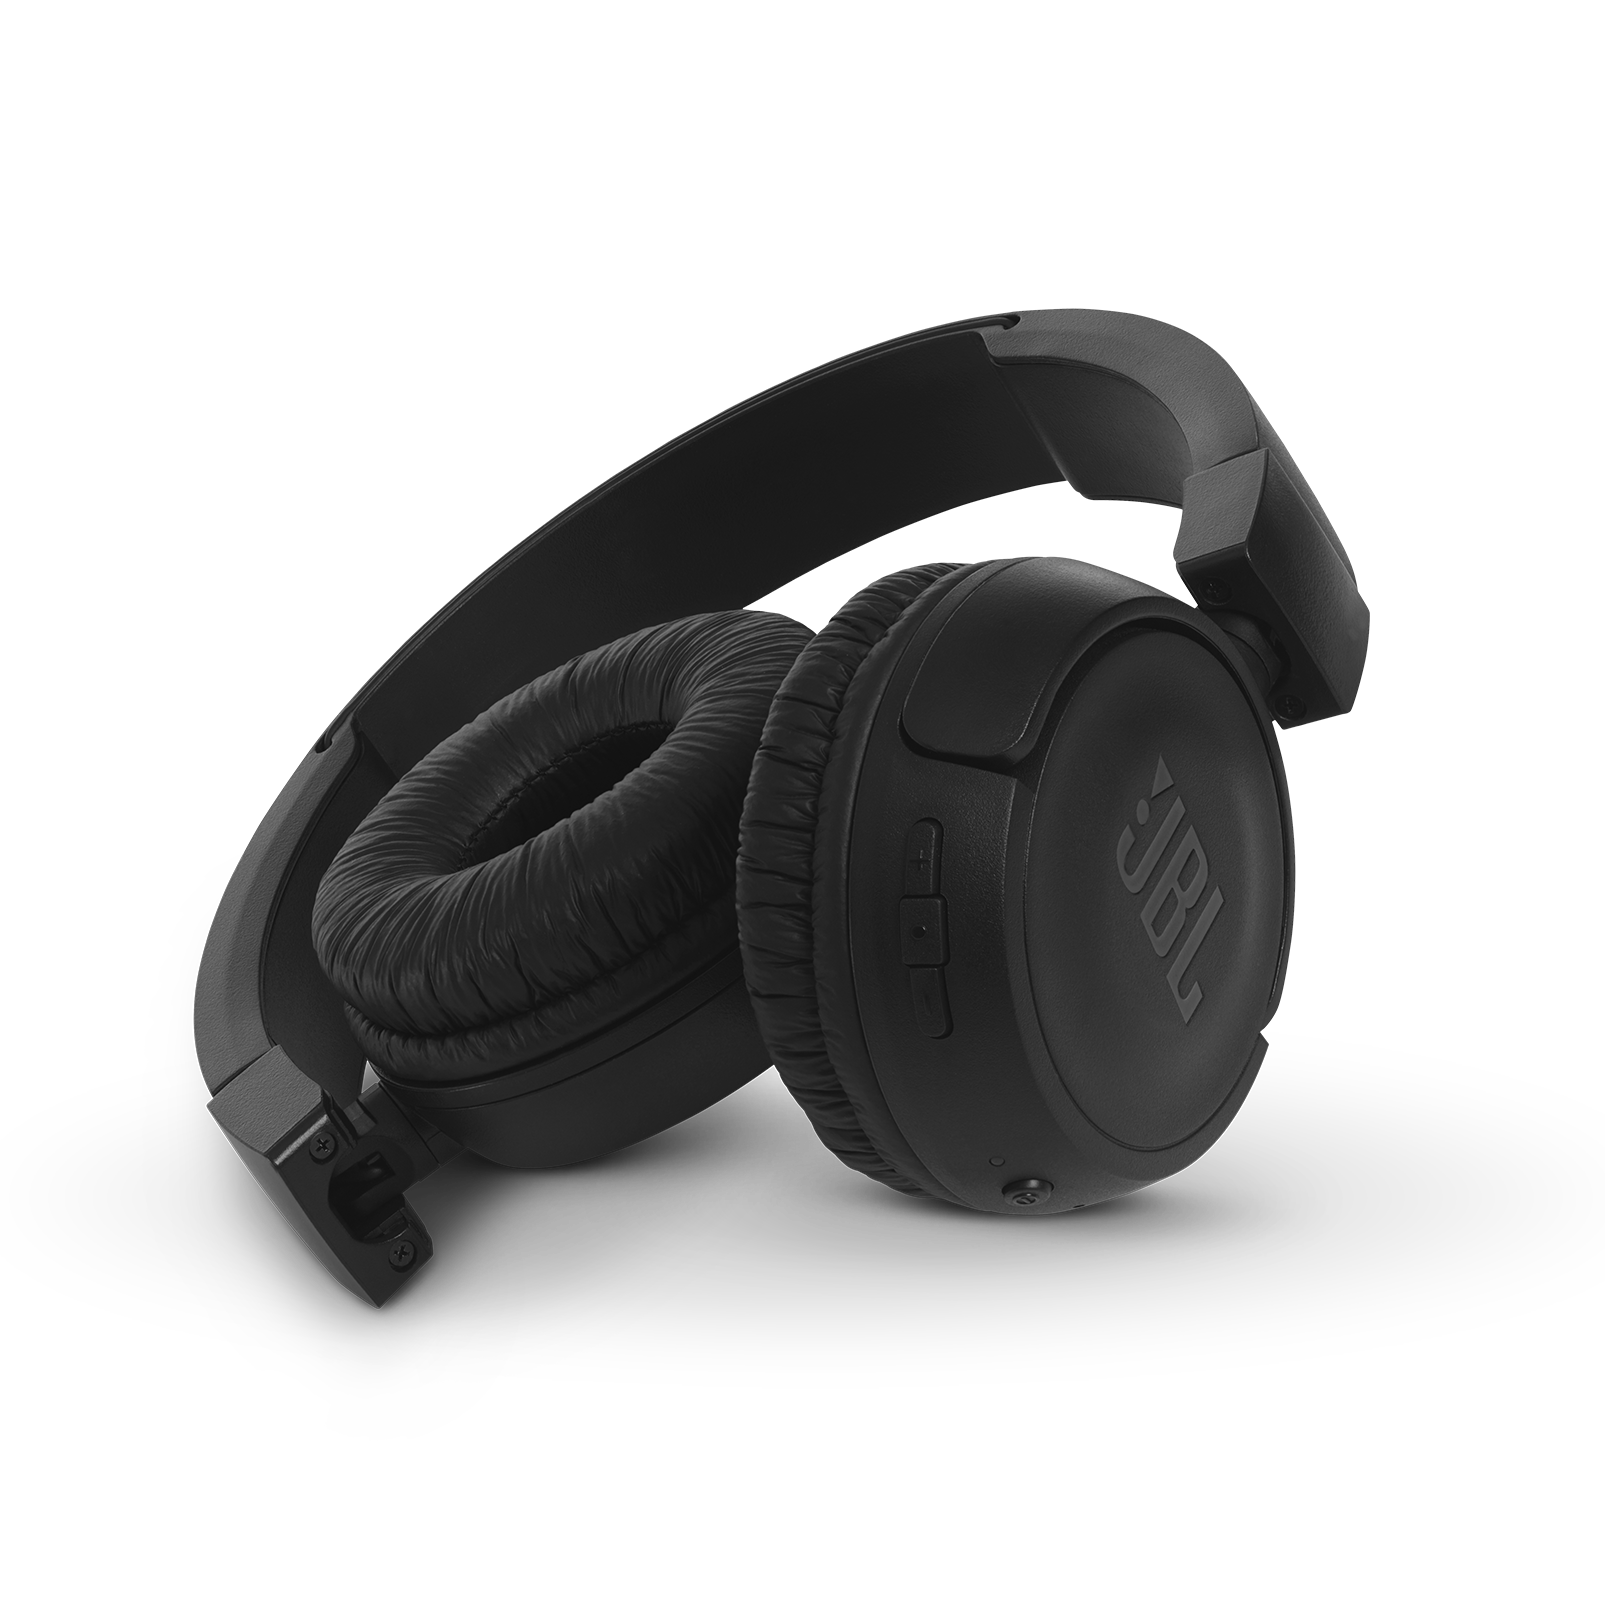 JBL T460BT - Black - Wireless on-ear headphones - Detailshot 1